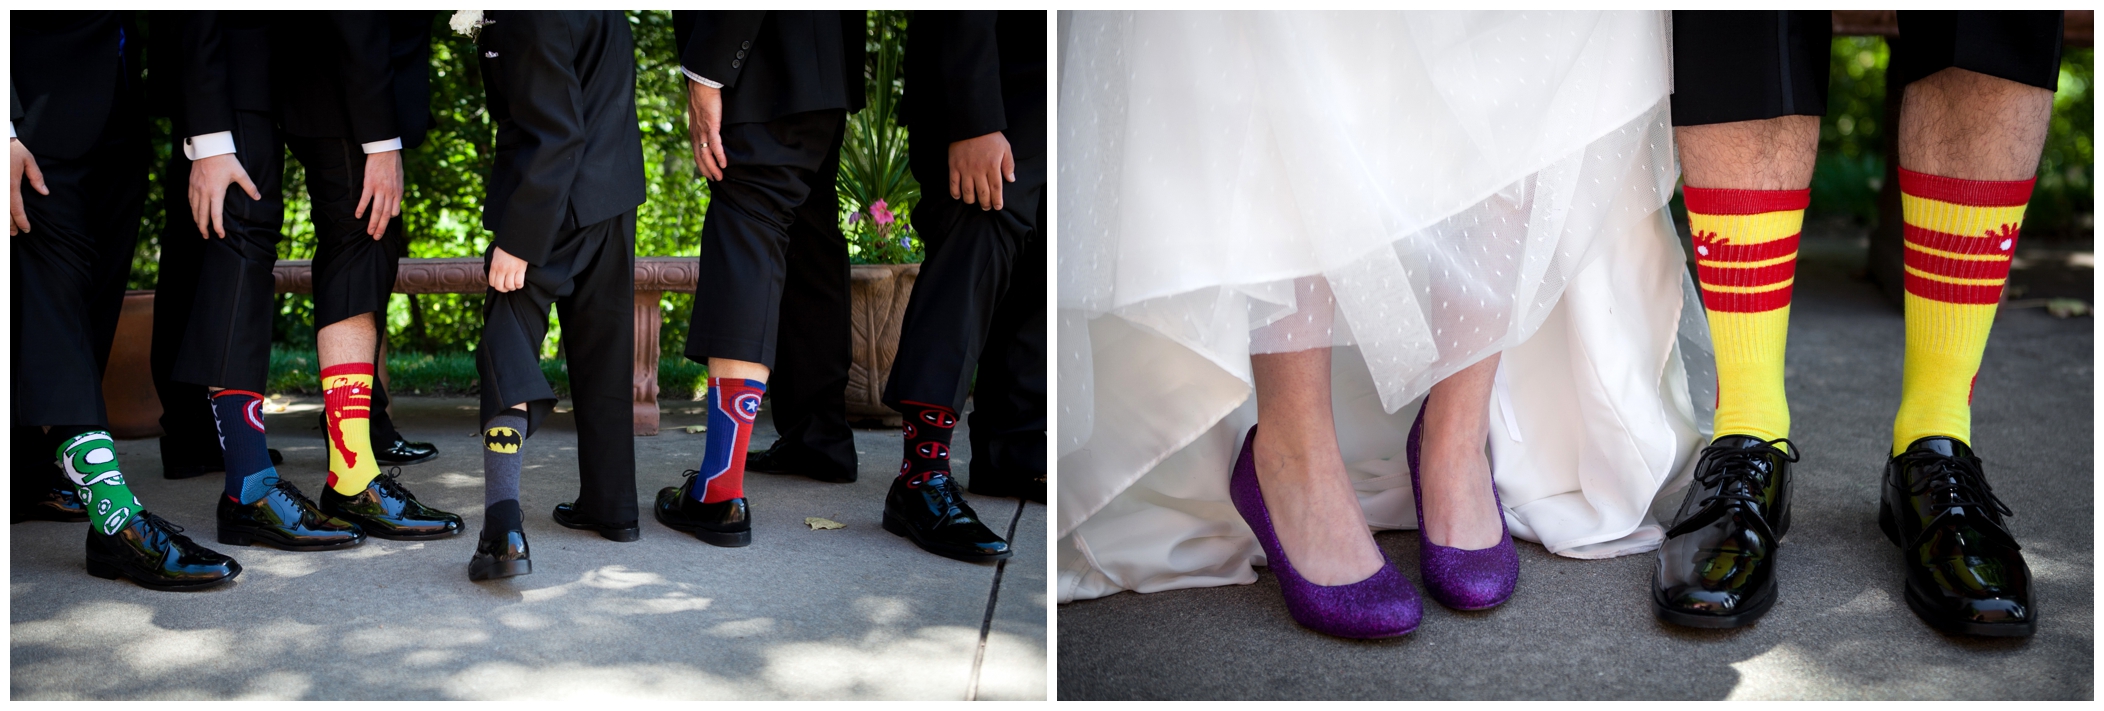 crazy groomsmen socks 